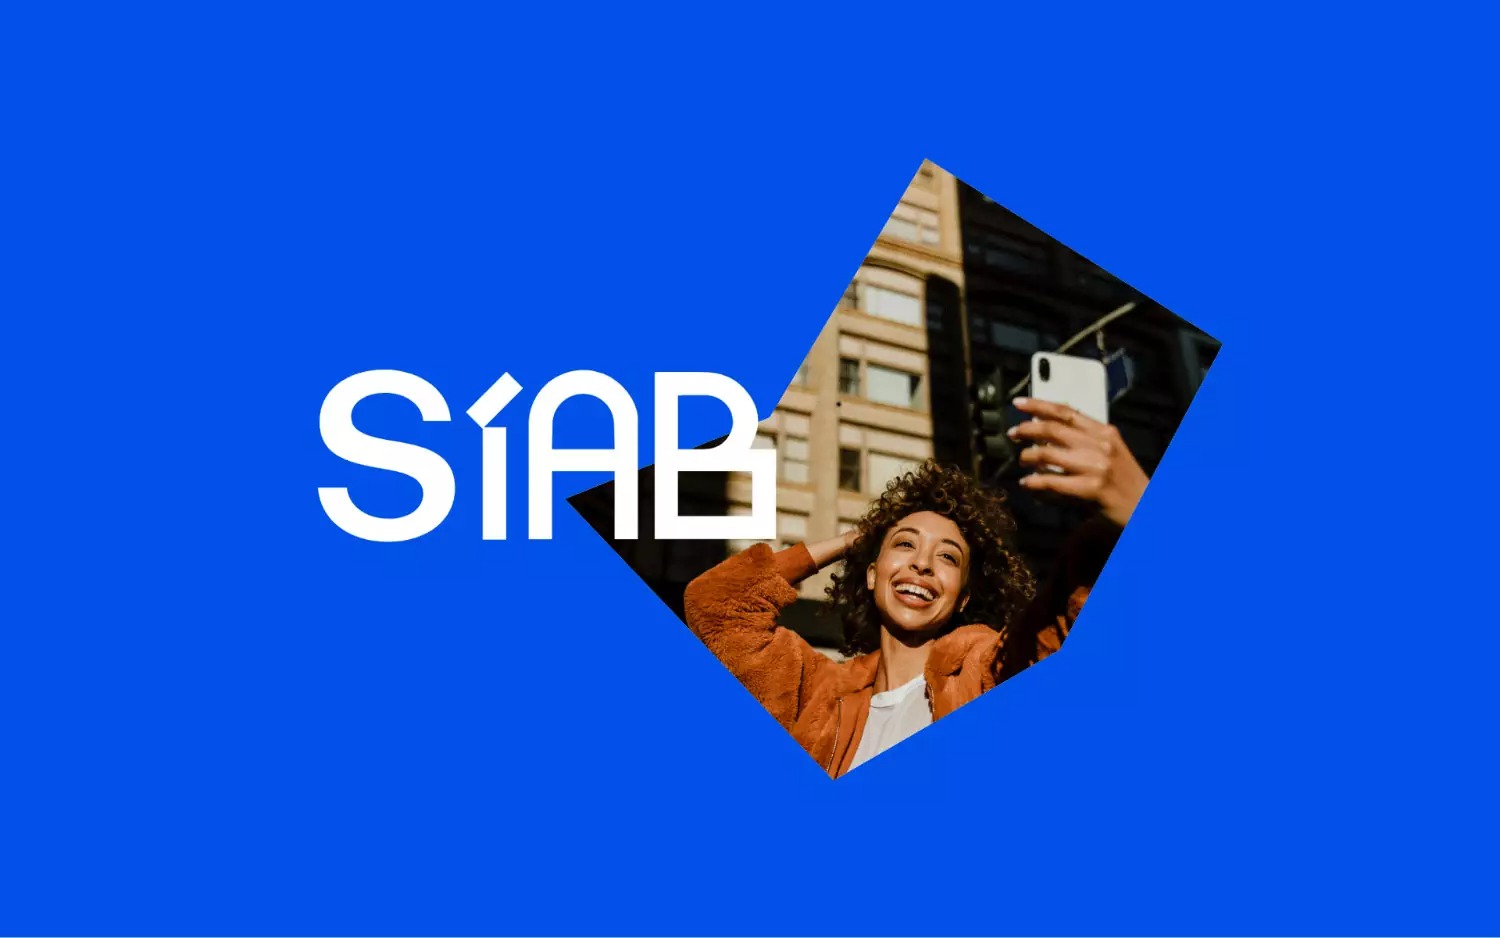 SIAB房地产开发公司品牌形象设计